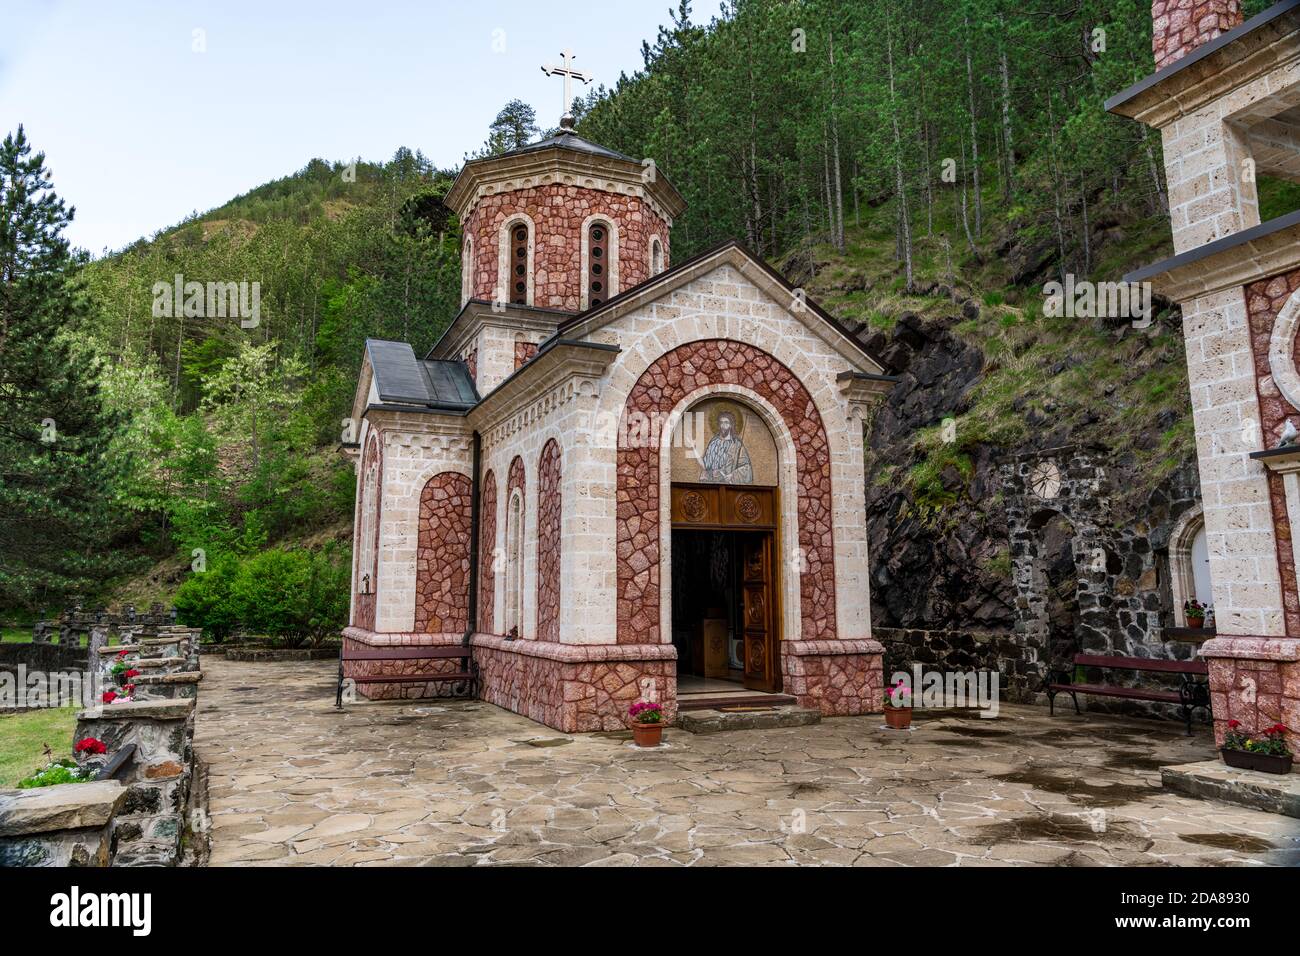 L'église Saint-Jean-Baptiste, Sveti Jovan Krstitelj sur Mokra Gora, est située à la source de Bela Voda, sur la rive gauche de la rivière Kamesina Banque D'Images